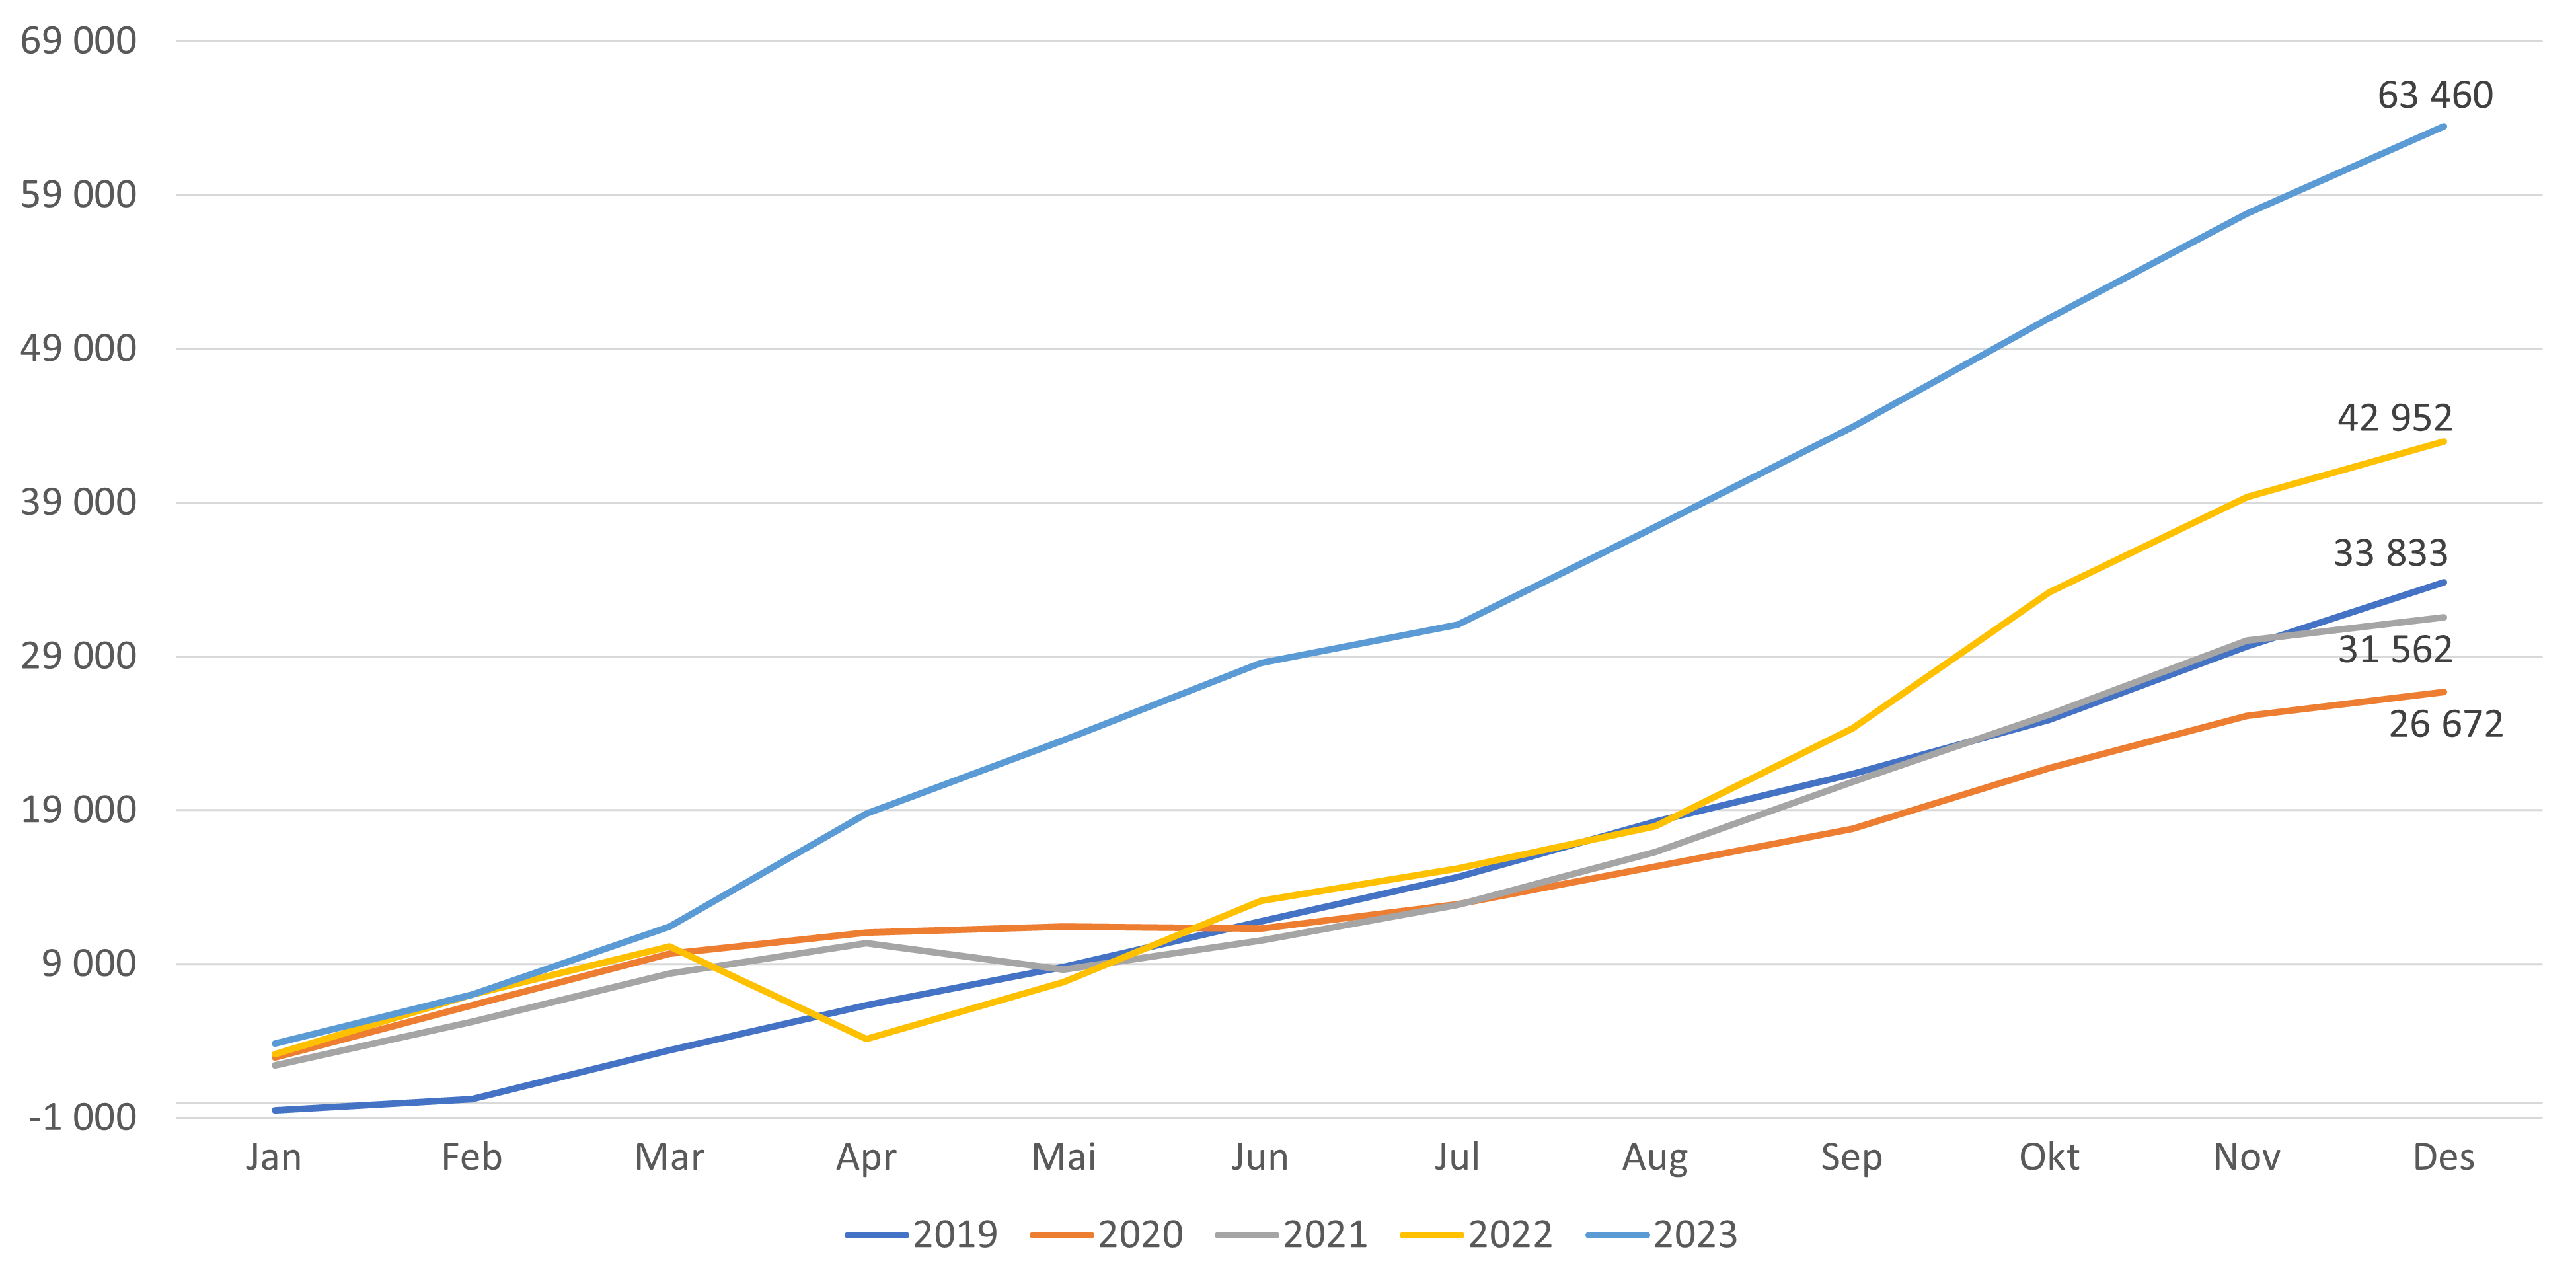 Figur 2. Antall listeinnbyggere i FLO - kumulativ månedsvis endring gjennom året (fra desember året før)